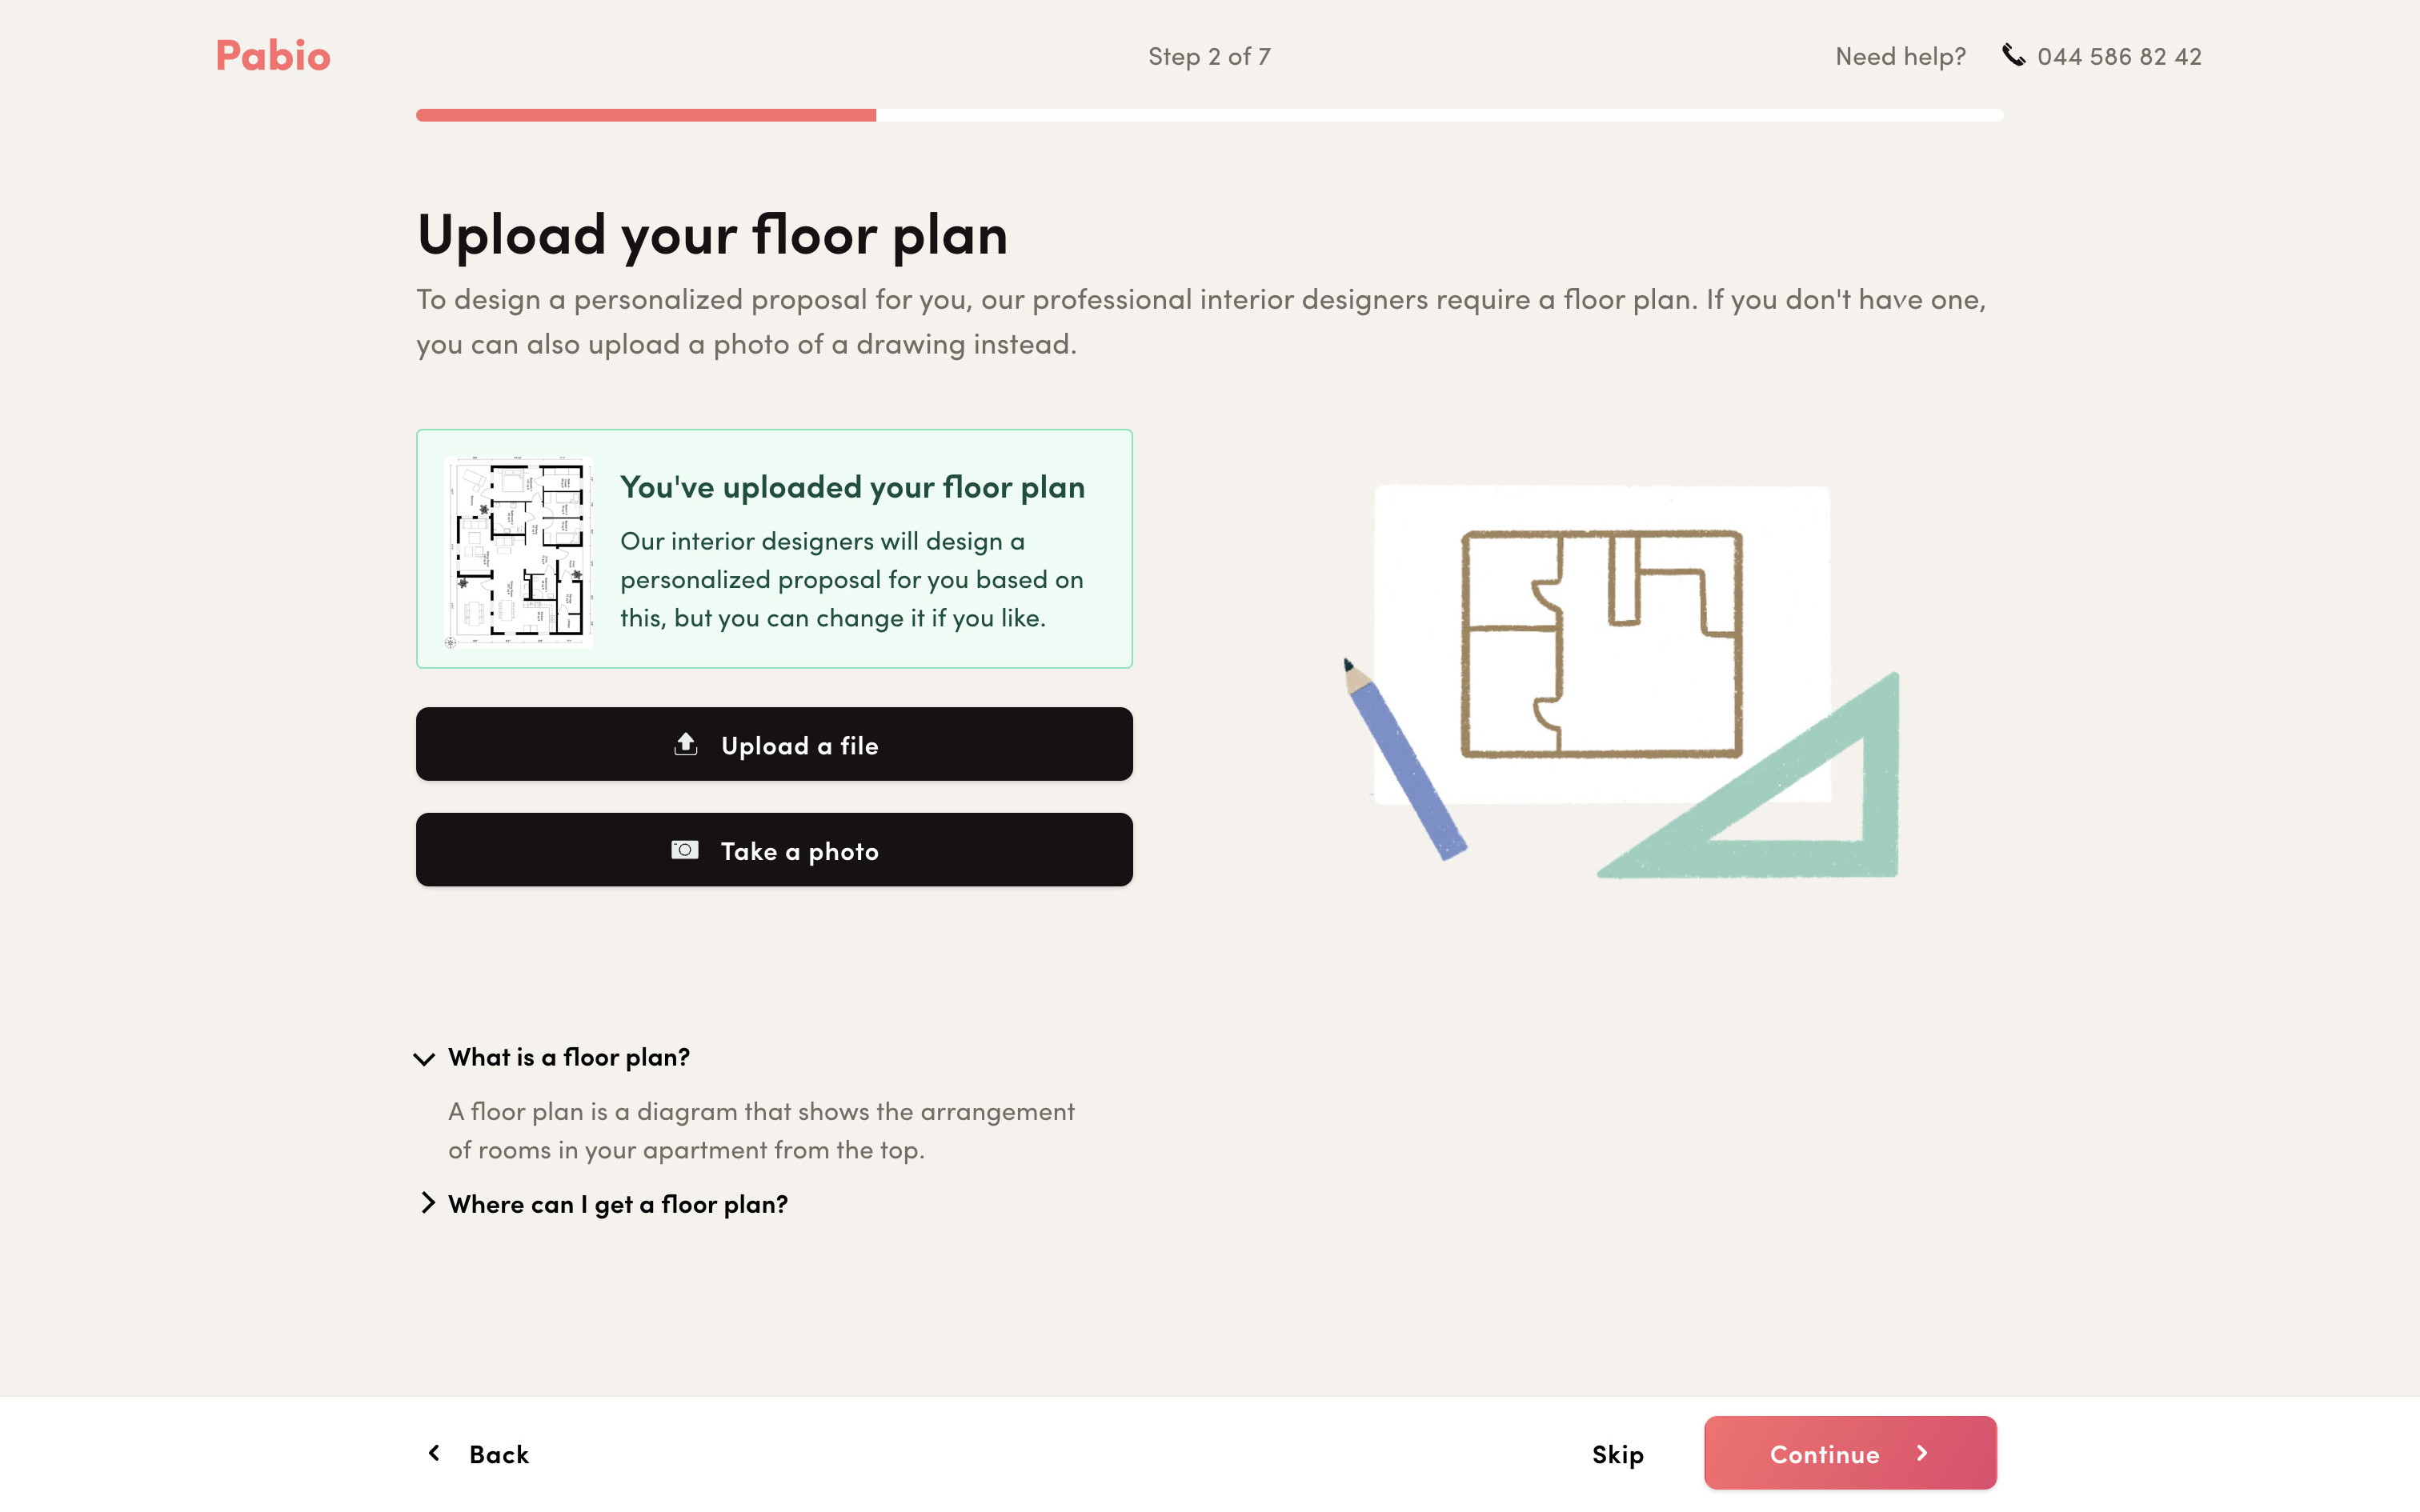 Upload your floor plan